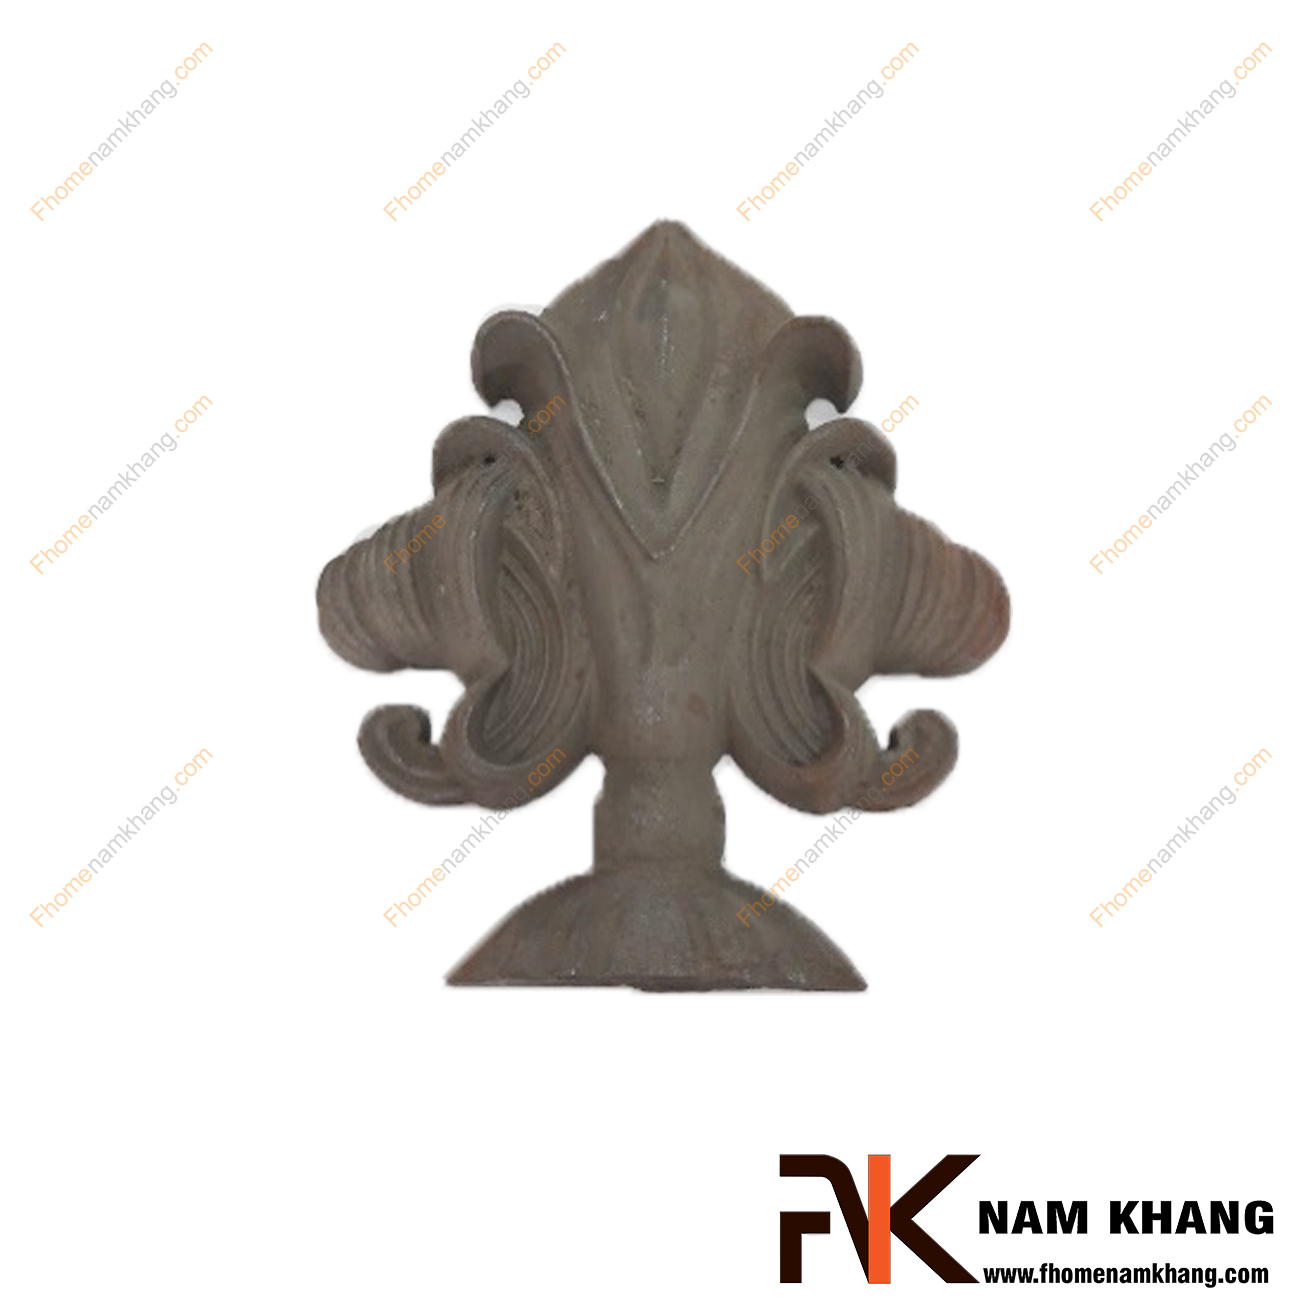 Phụ kiện gang đúc tạo hình nụ hoa NKS-102 là phụ kiện dành cho các sản phẩm sắt uốn mỹ thuật.  Chi tiết được sử dụng để nối các hàn, lắp ghép và trang trí.